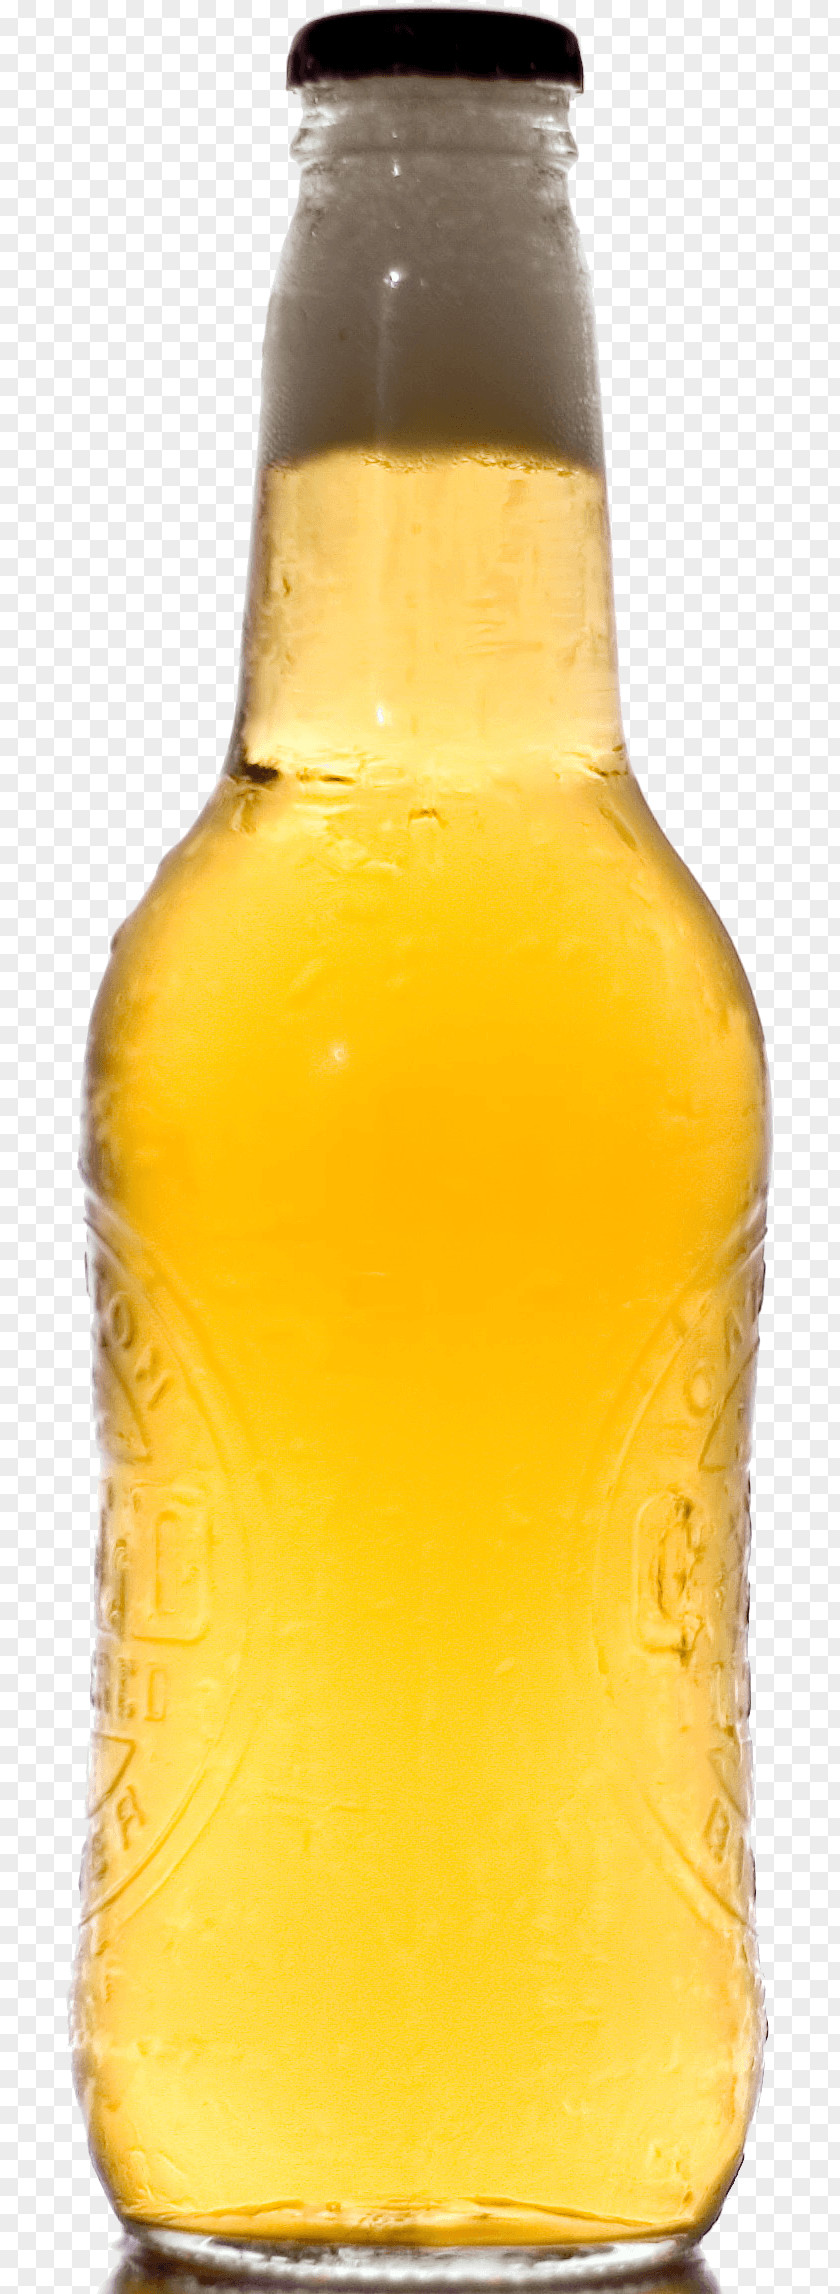 Beer Bottle Image Corona PNG